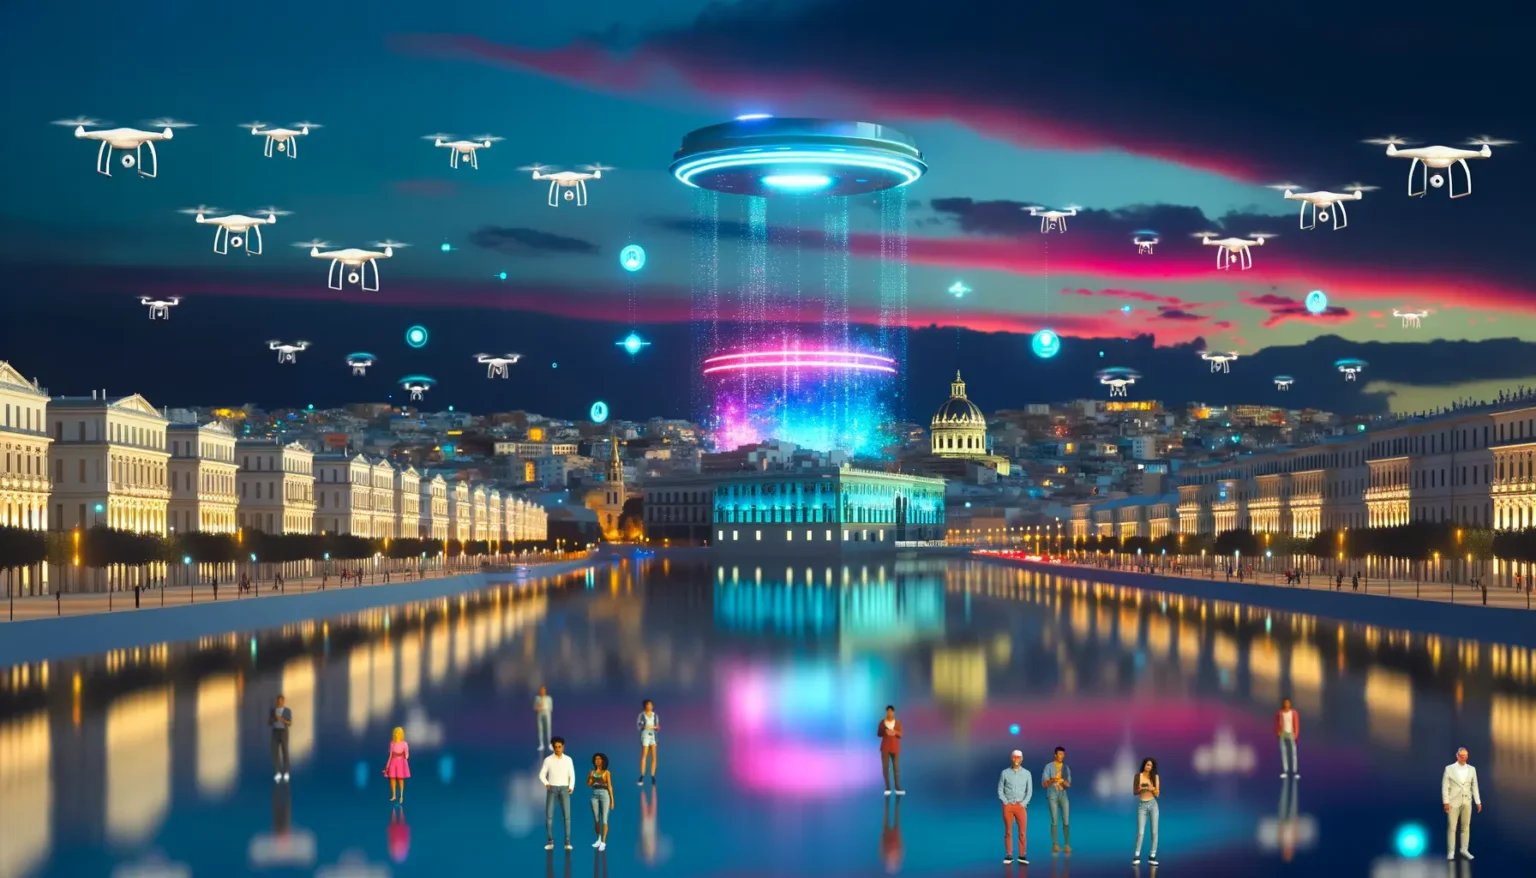 Eine futuristische Stadtansicht bei Nacht mit einem großen, beleuchteten UFO, das über einer Promenade schwebt, aus der ein strahlender Lichtstrahl auf die darunter liegende Straße fällt. Mehrere kleinere Drohnen fliegen im Himmel, und am Boden spiegeln sich die Lichter in einem ruhigen Gewässer. Menschen stehen auf der Promenade und beobachten das Geschehen. Im Hintergrund ist die Silhouette einer Stadt mit historischen Gebäuden zu erkennen.